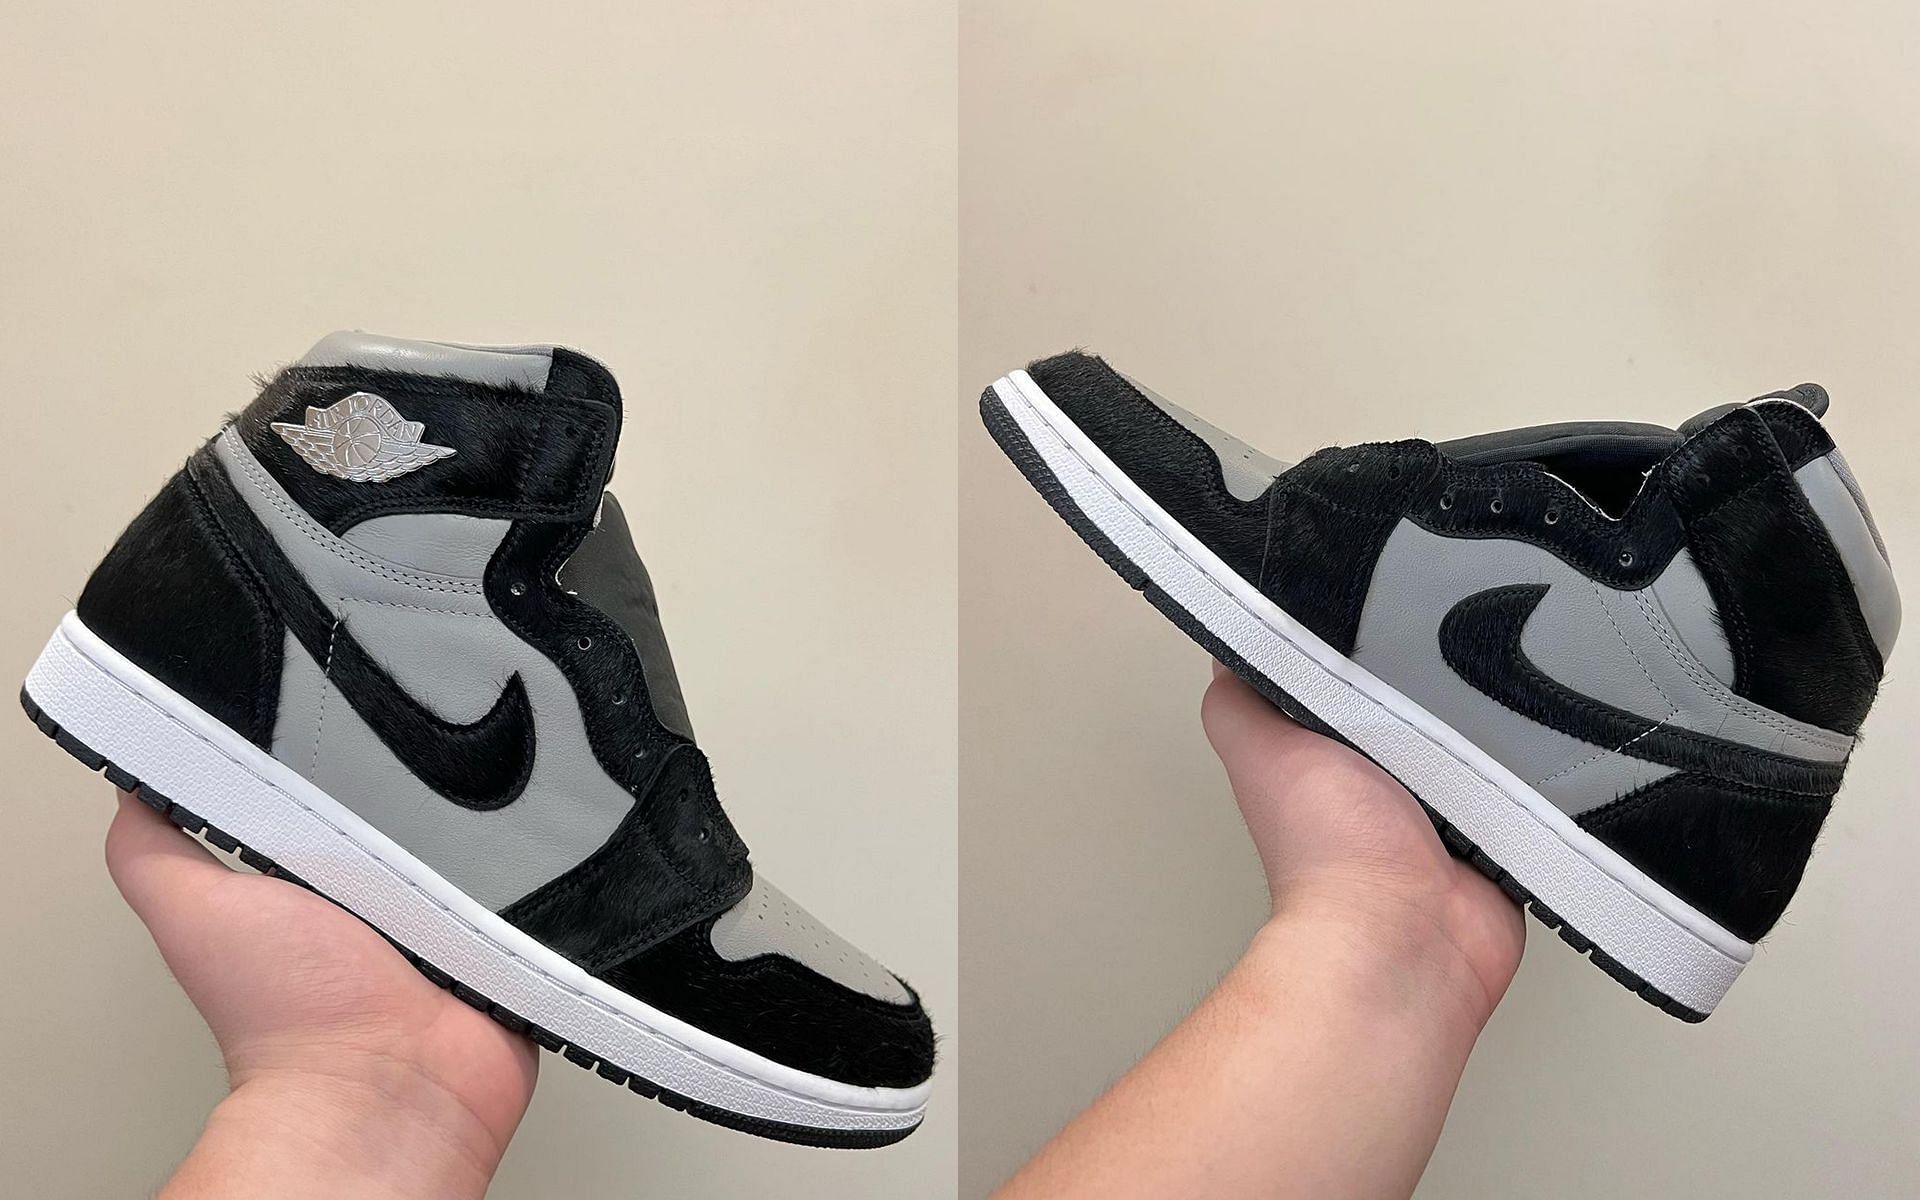 Nike Air Jordan 1 High OG Twist 2.0 (Image via @woganwodeyang/Instagram)